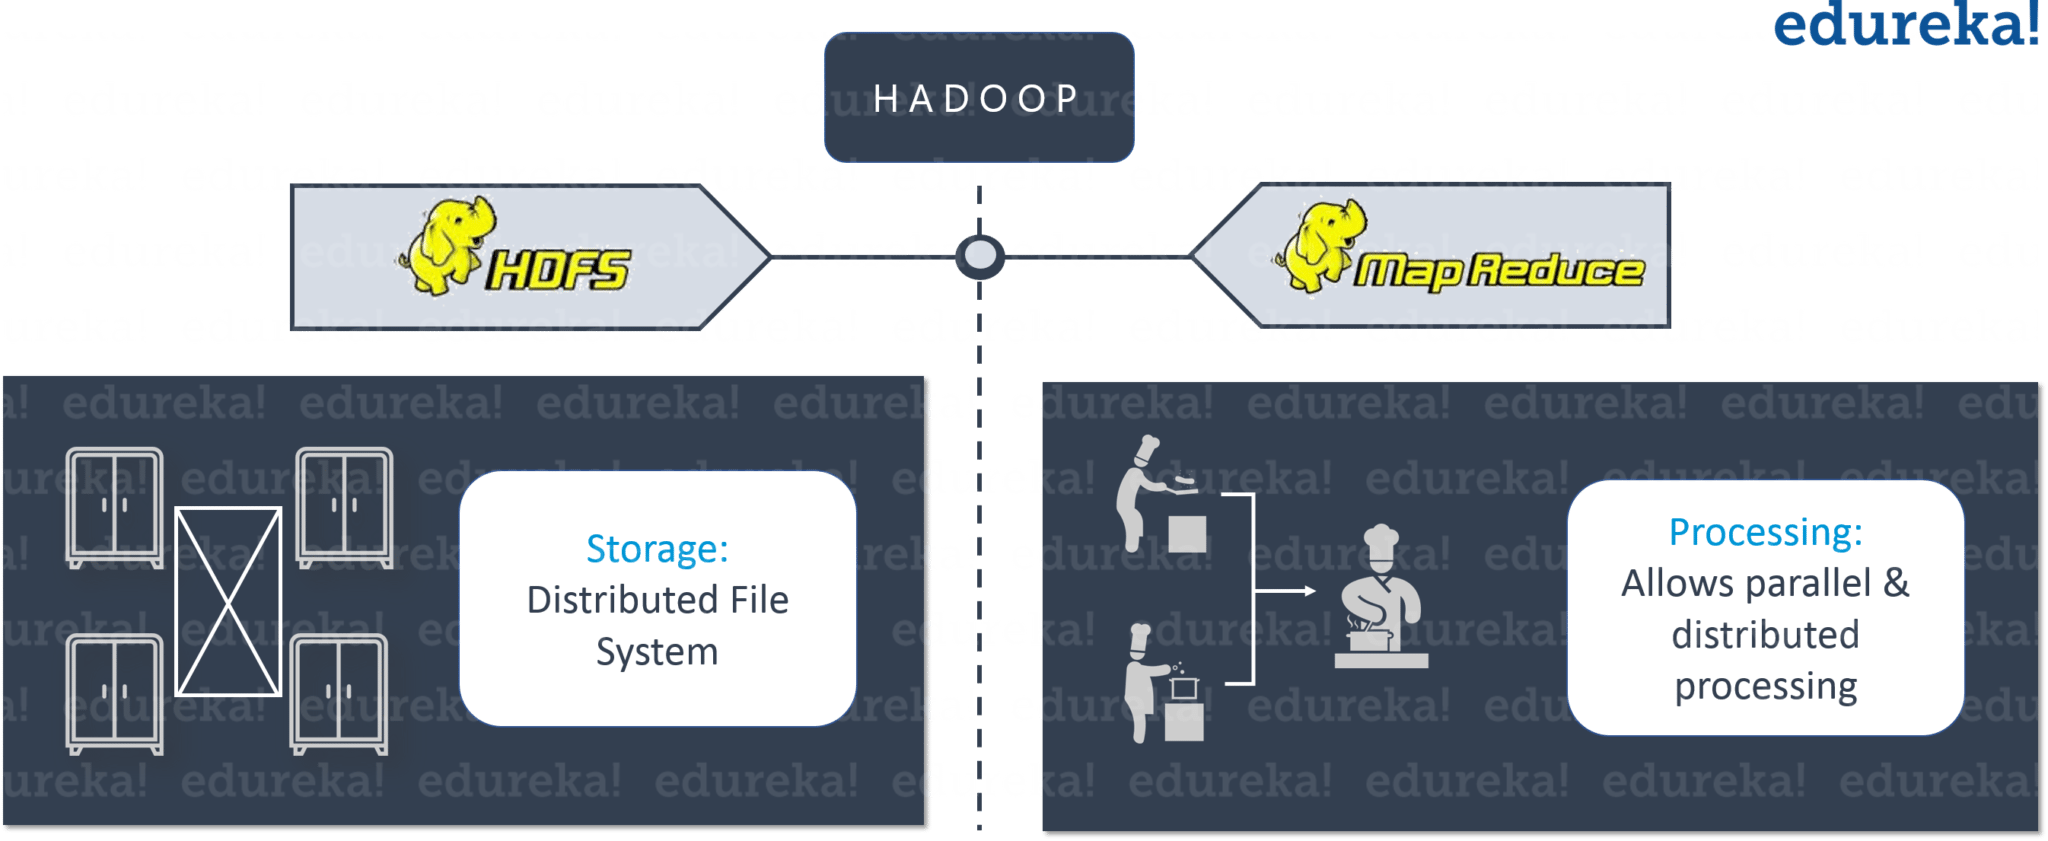 Hadoop as a Solution - Restaurant Analogy - Hadoop Tutorial - Edureka